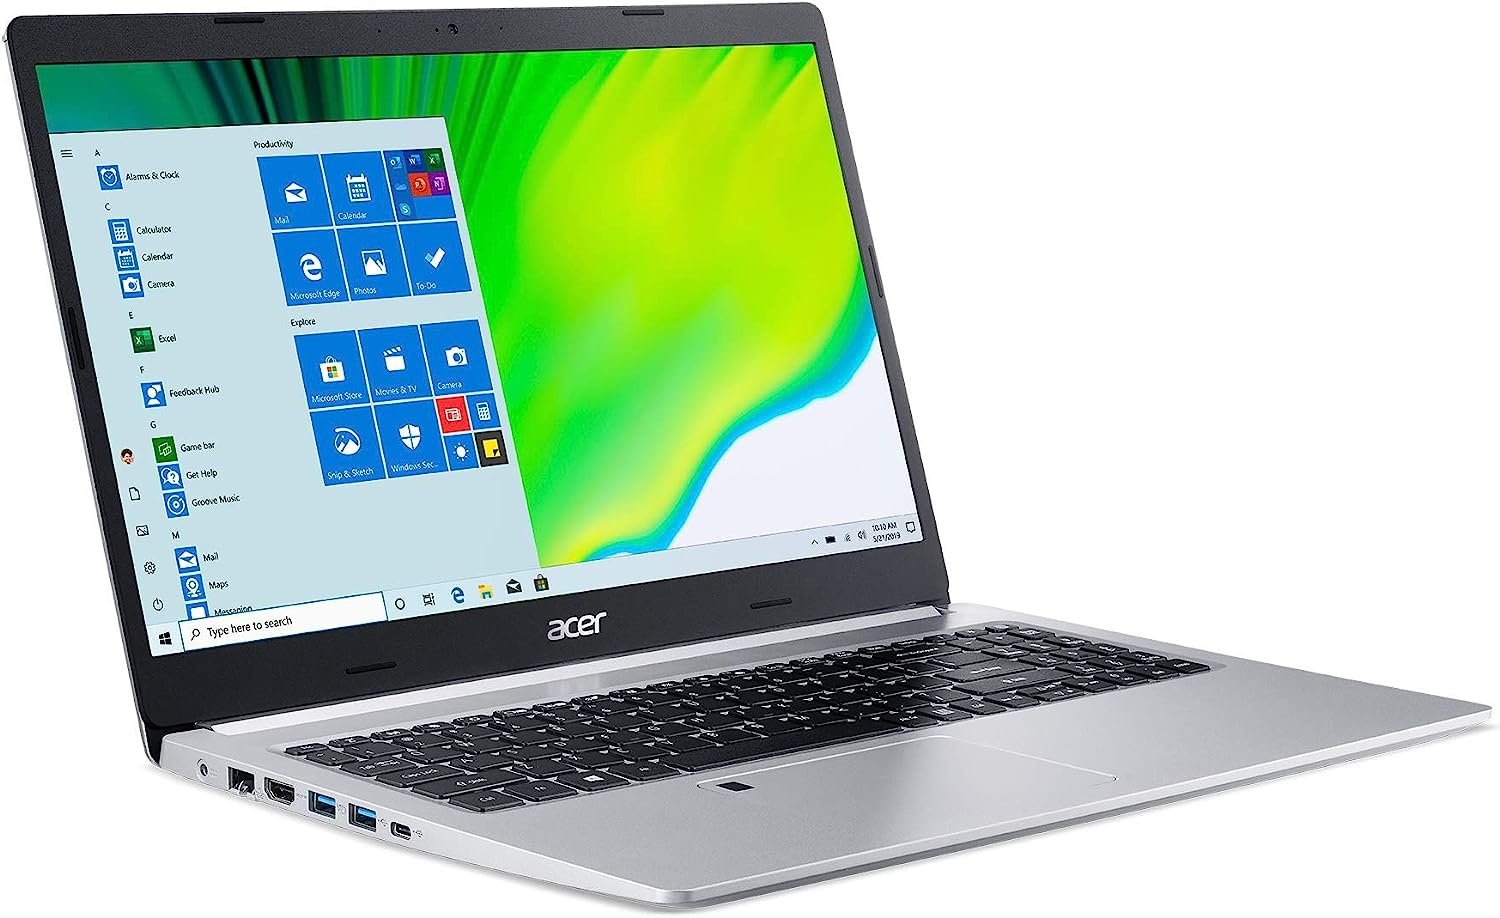 Acer Aspire 5 A515-44-R93G